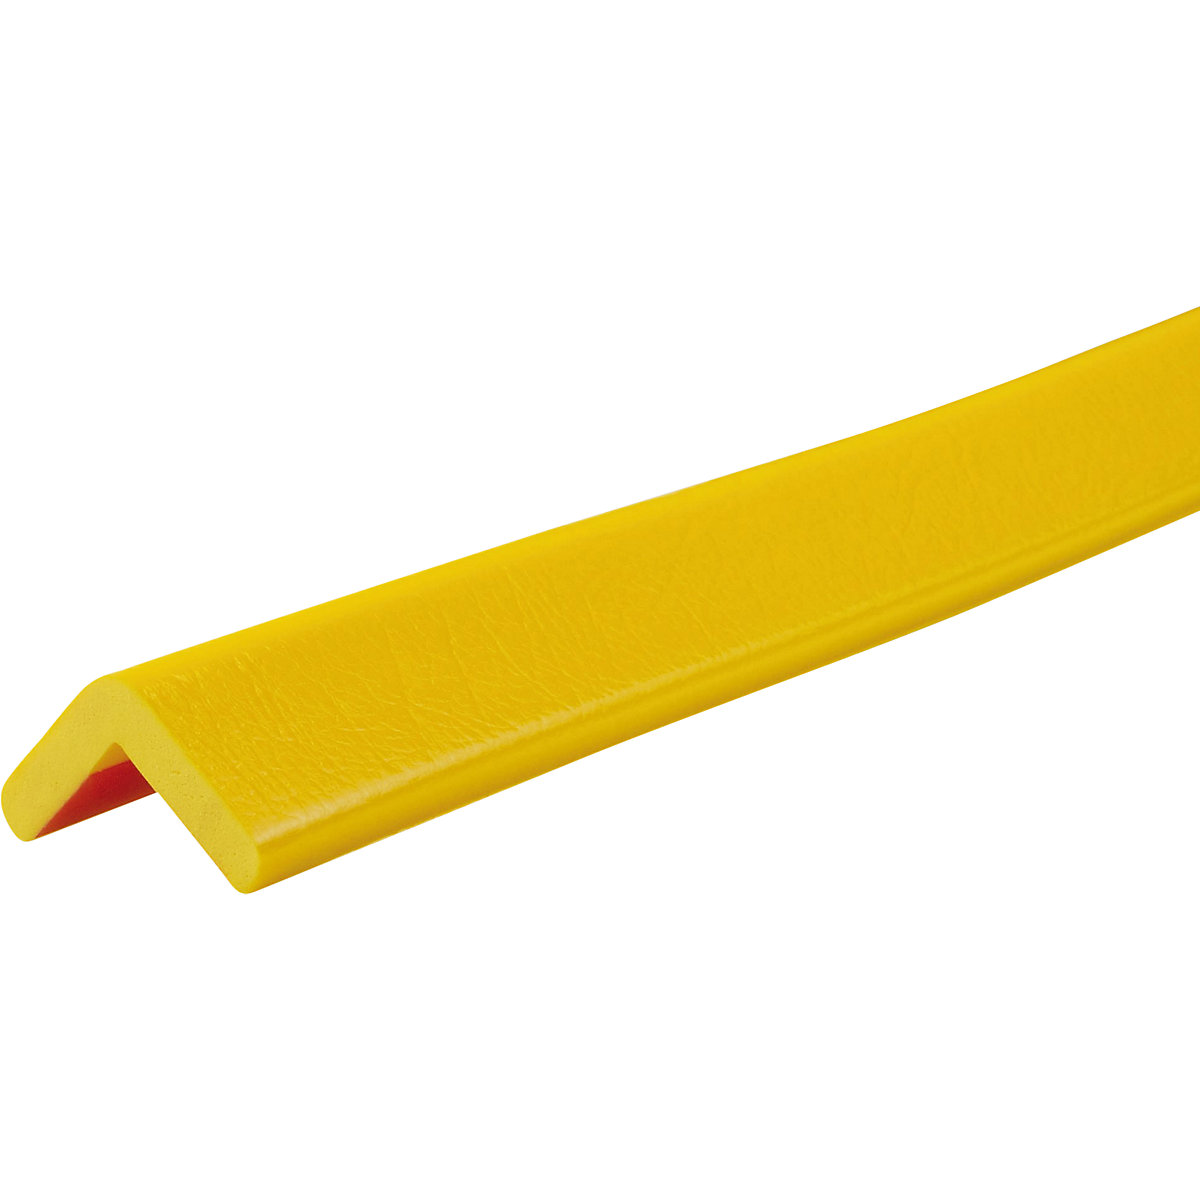 Knuffi®-hoekbescherming – SHG, type H, stuk van 1 m, geel-16